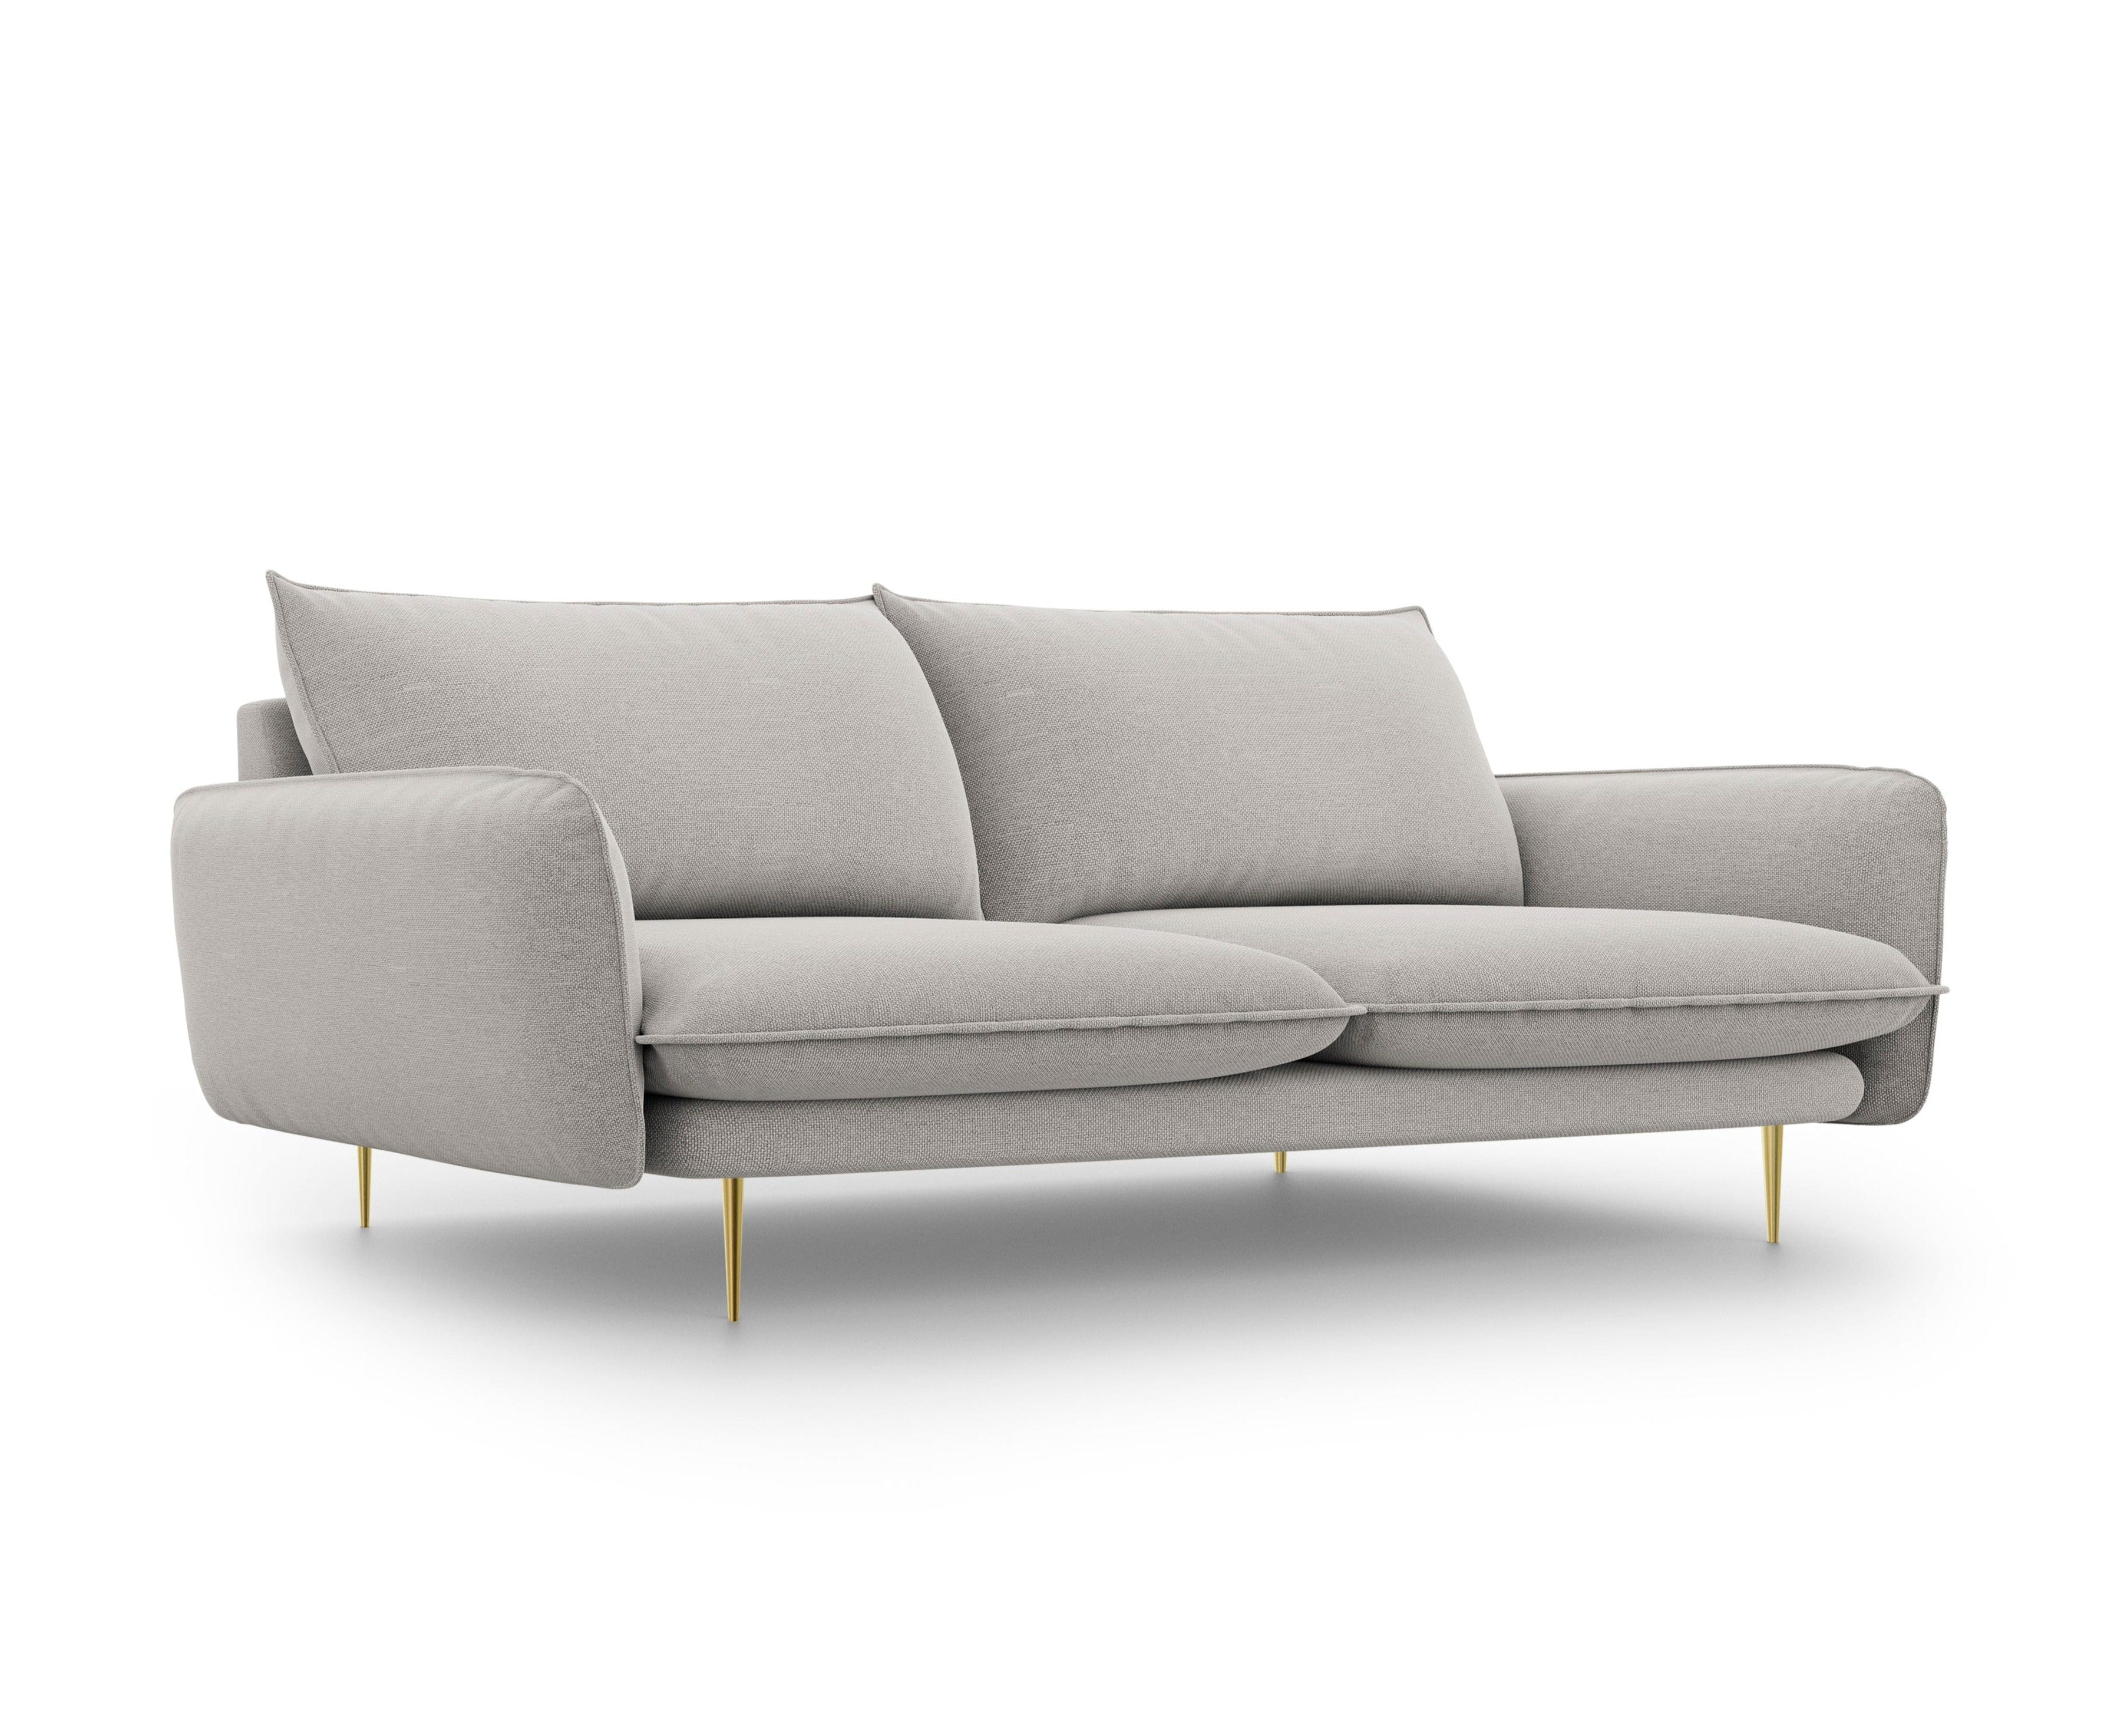 4-Sitzer-Sofa VIENNA hellgrau mit goldenem Untergestell